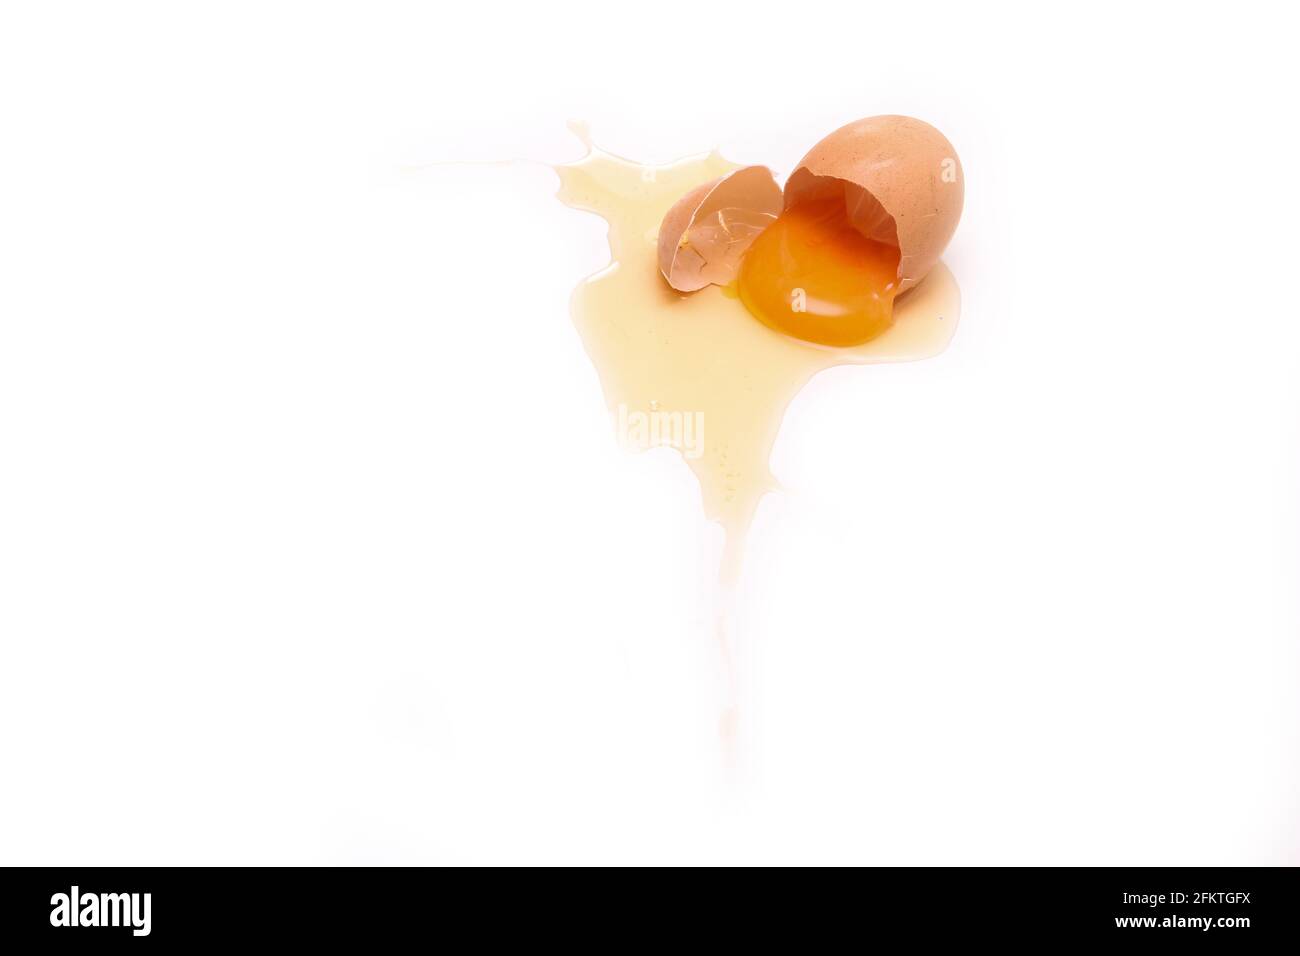 L'œuf biologique déchu est brisé avec la coquille d'œuf écrasée et le jaune d'œuf et le blanc s'écoulant de celui-ci. Banque D'Images